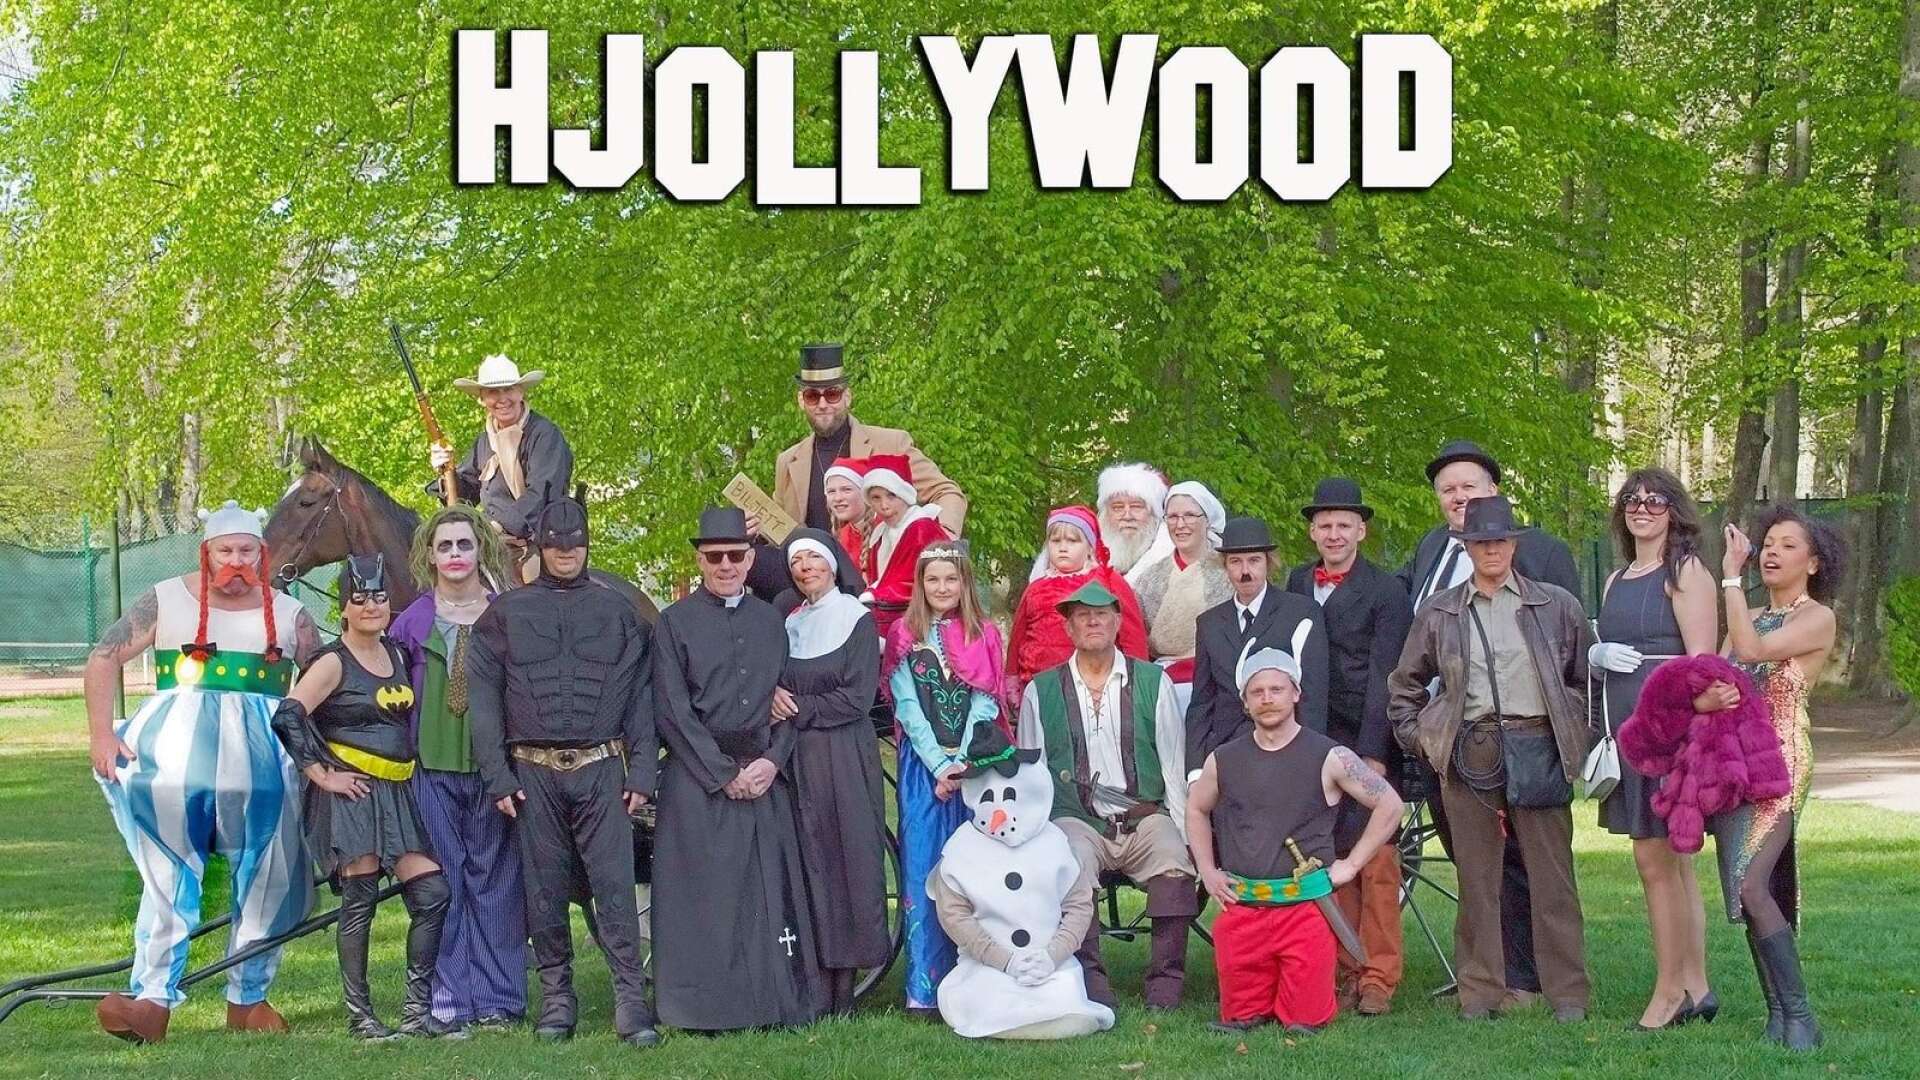 Det var kändistätt när den stjärnspäckade gruppen Hollywoodkändisar samlades till det årliga fotot inför Juldoppet i november. Årets tema är Let&apos;s go to Hjollywood mix.